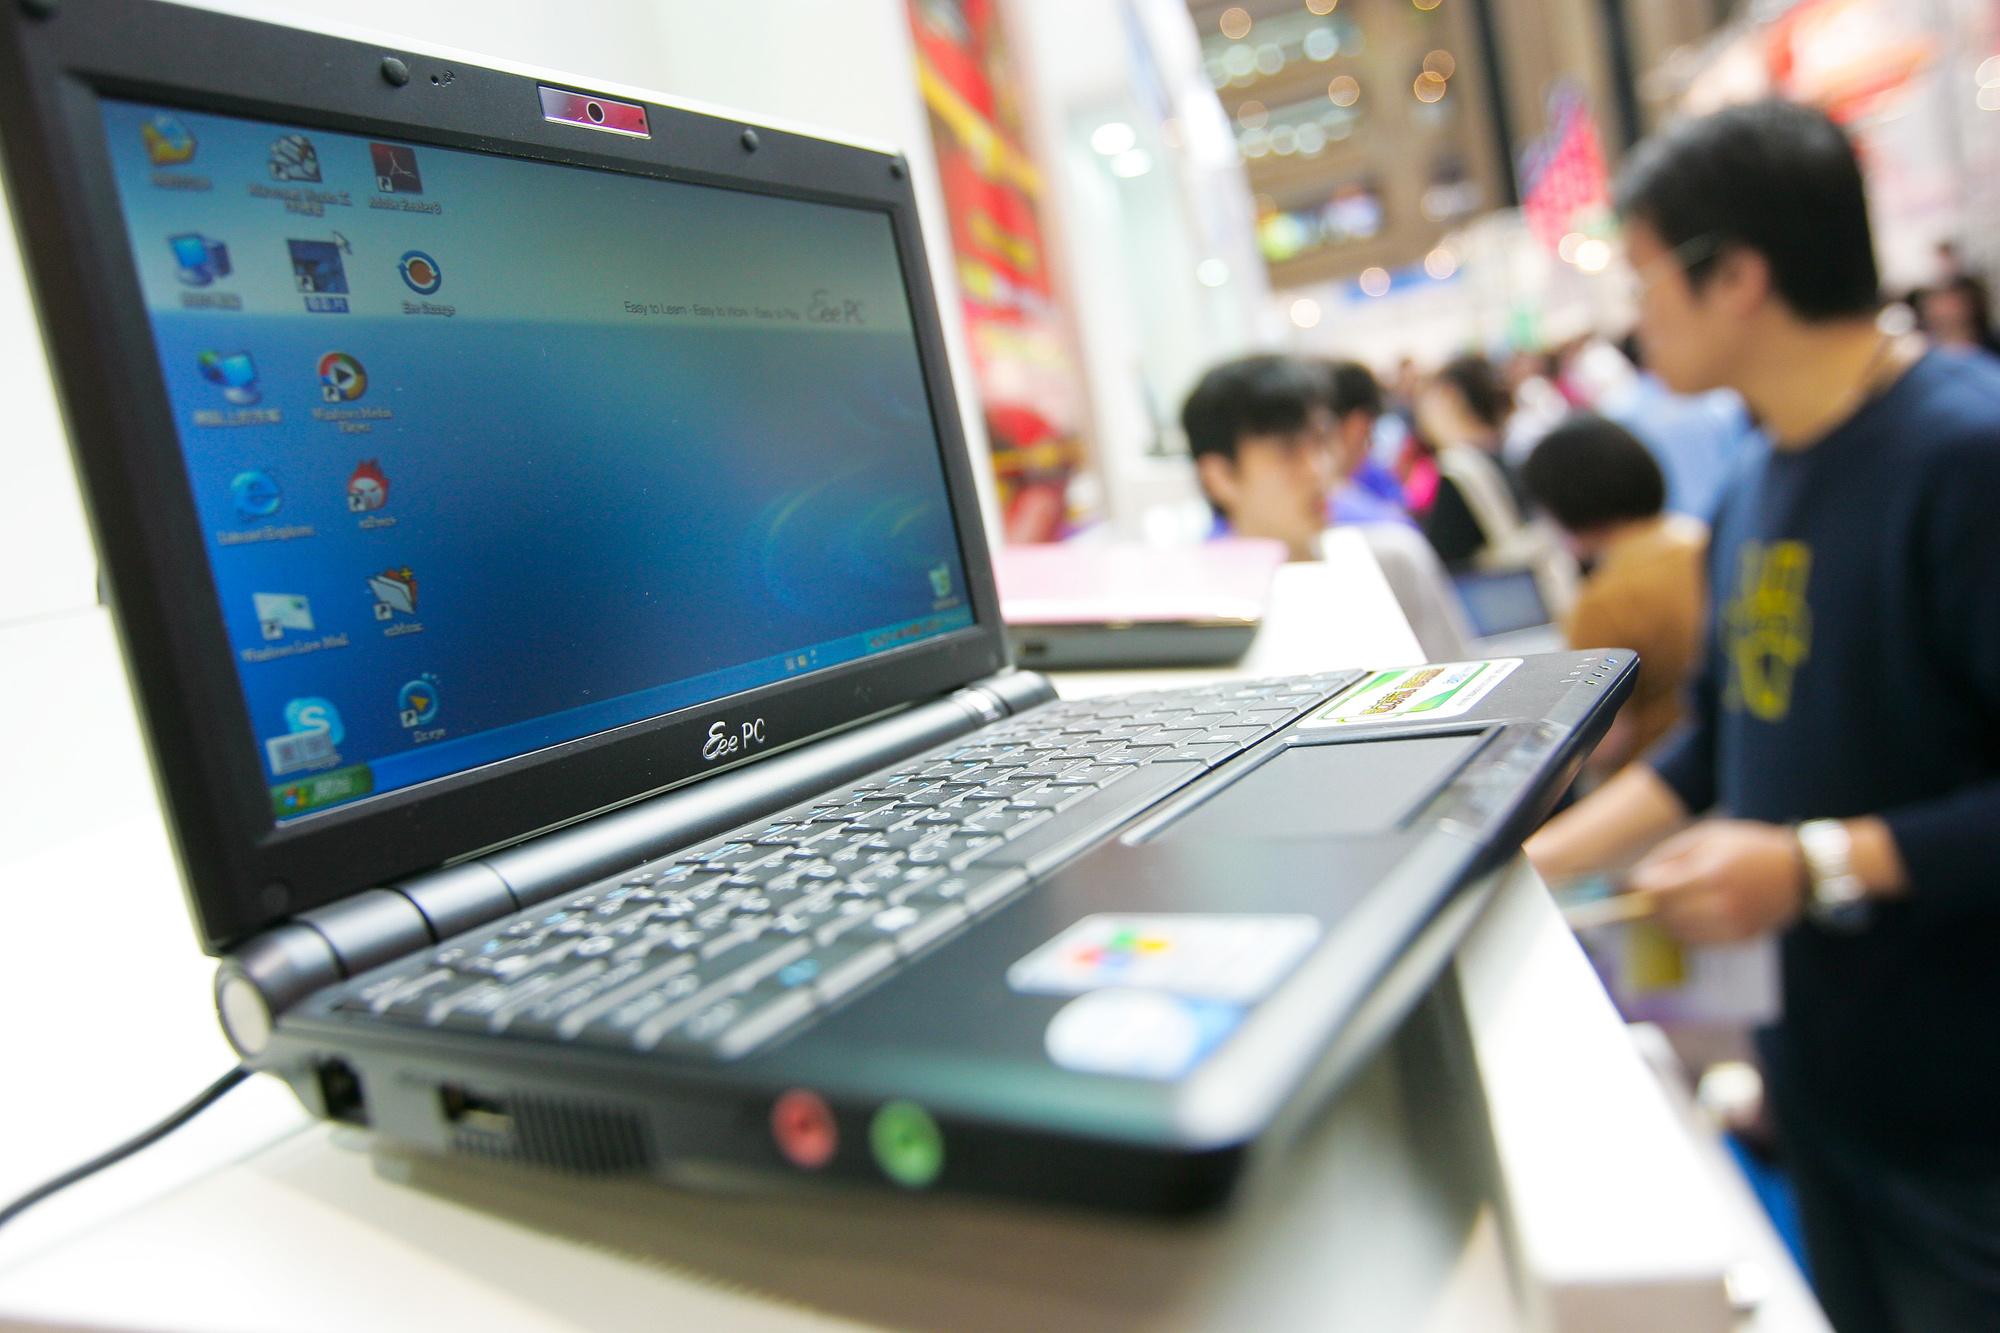 Asus kwam als een van de eersten met minilaptops of netbooks.